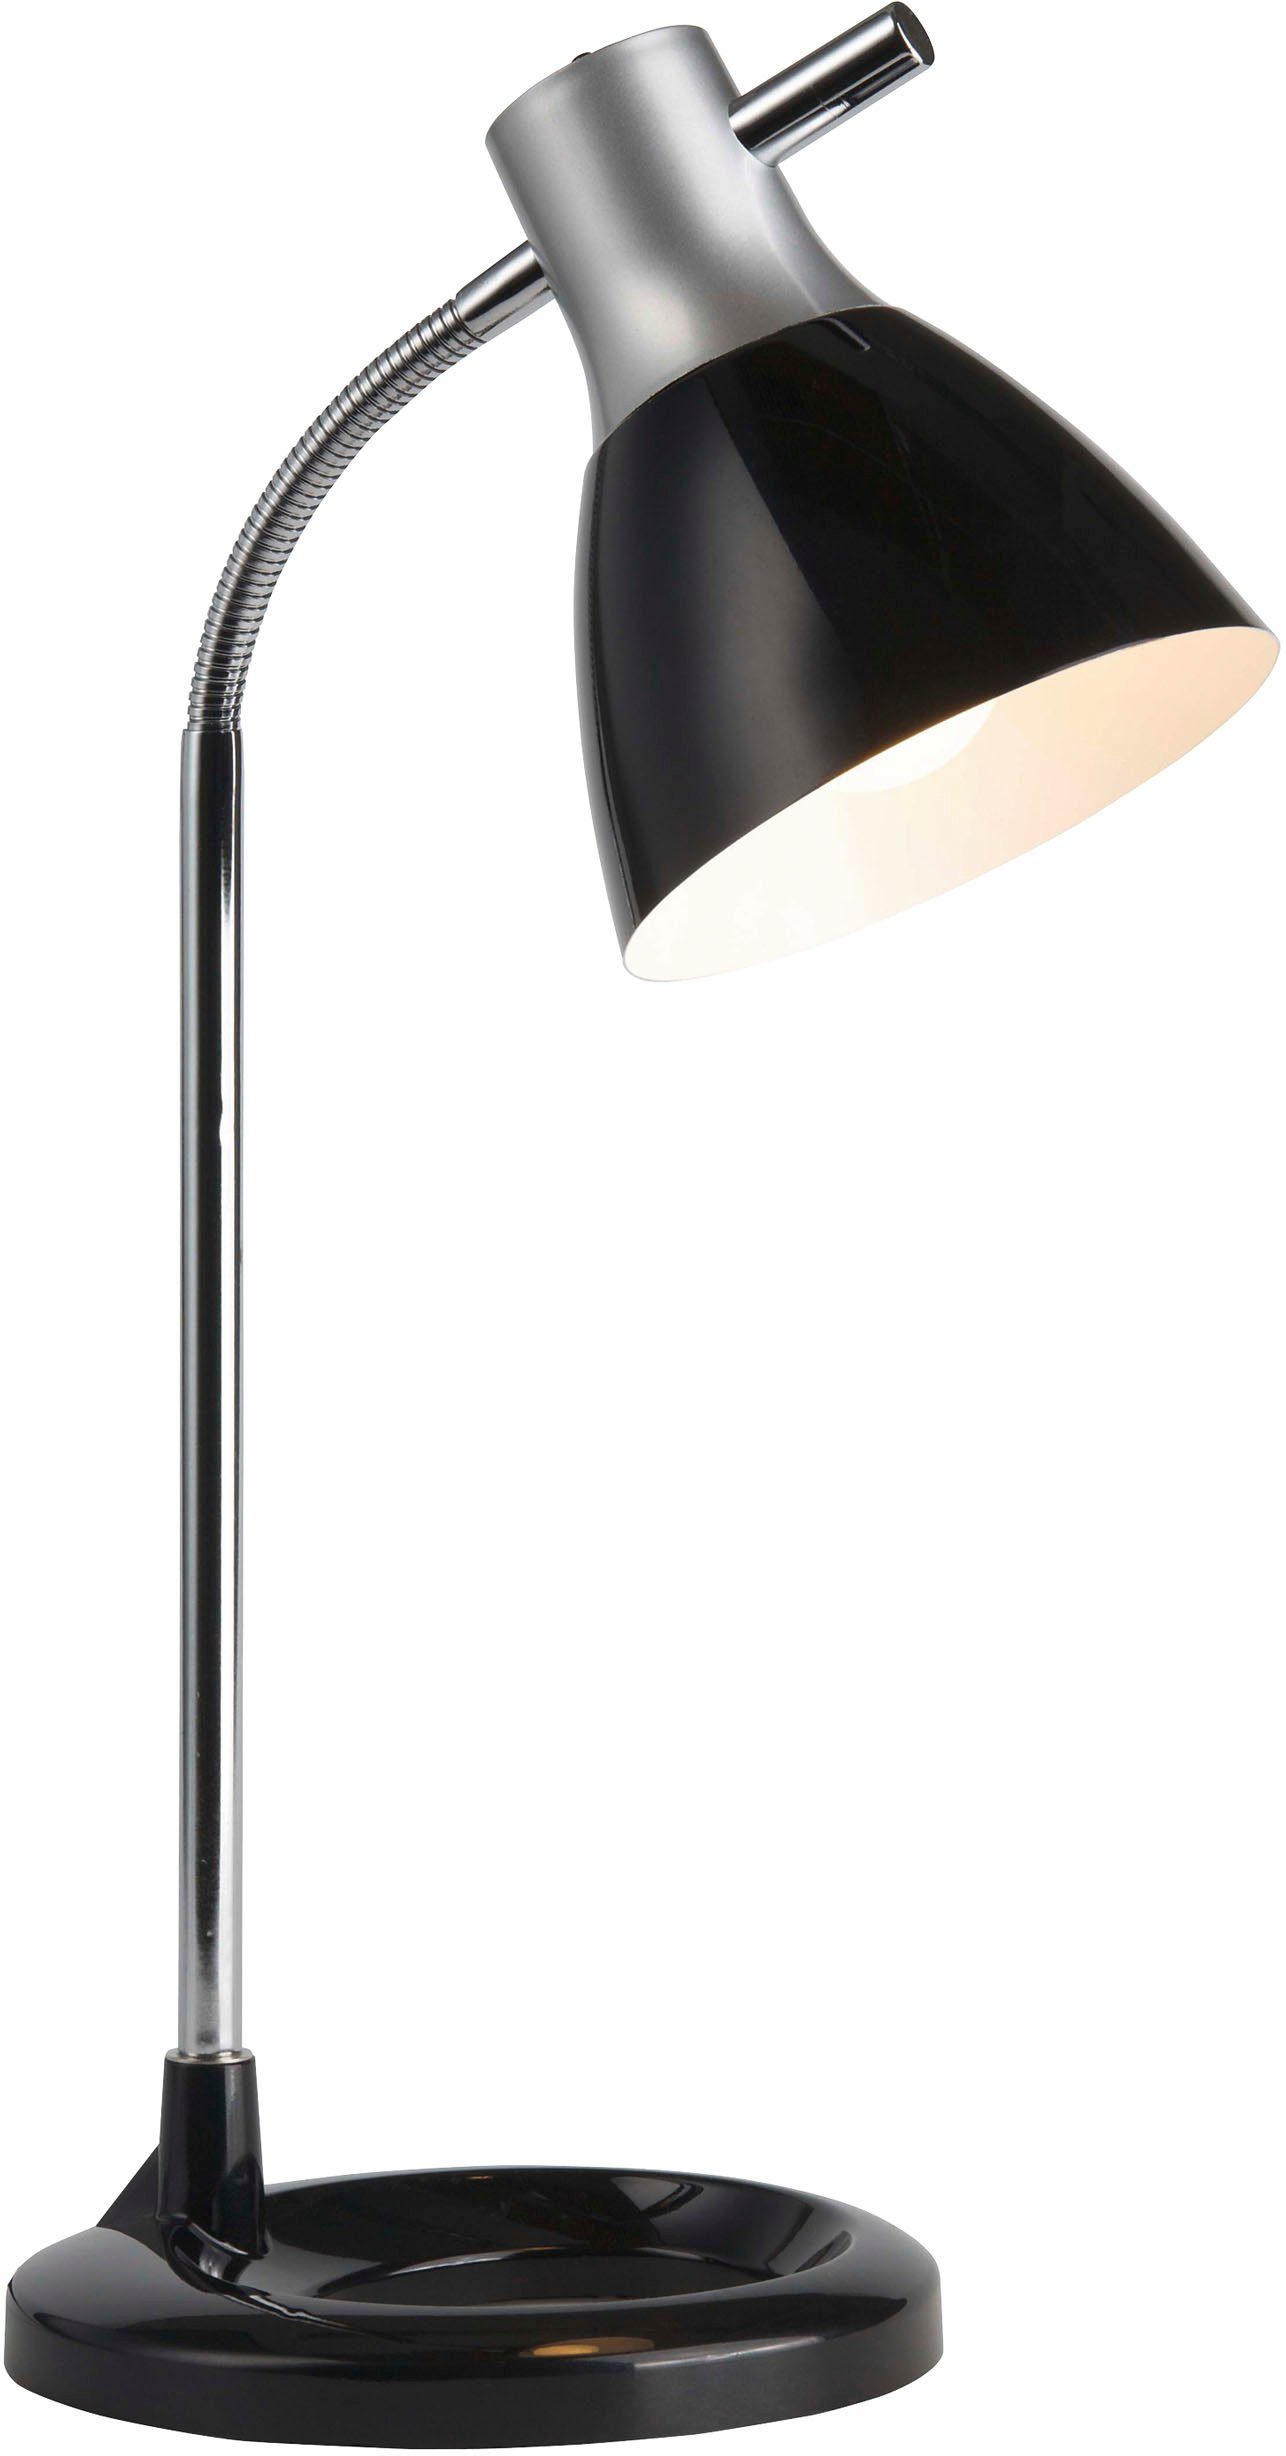 Brilliant Tischleuchte Jan, Lampe Jan Tischleuchte silber/schwarz 1x A60,  E27, 40W, geeignet für, Beleuchtung passend für jede Wohnung